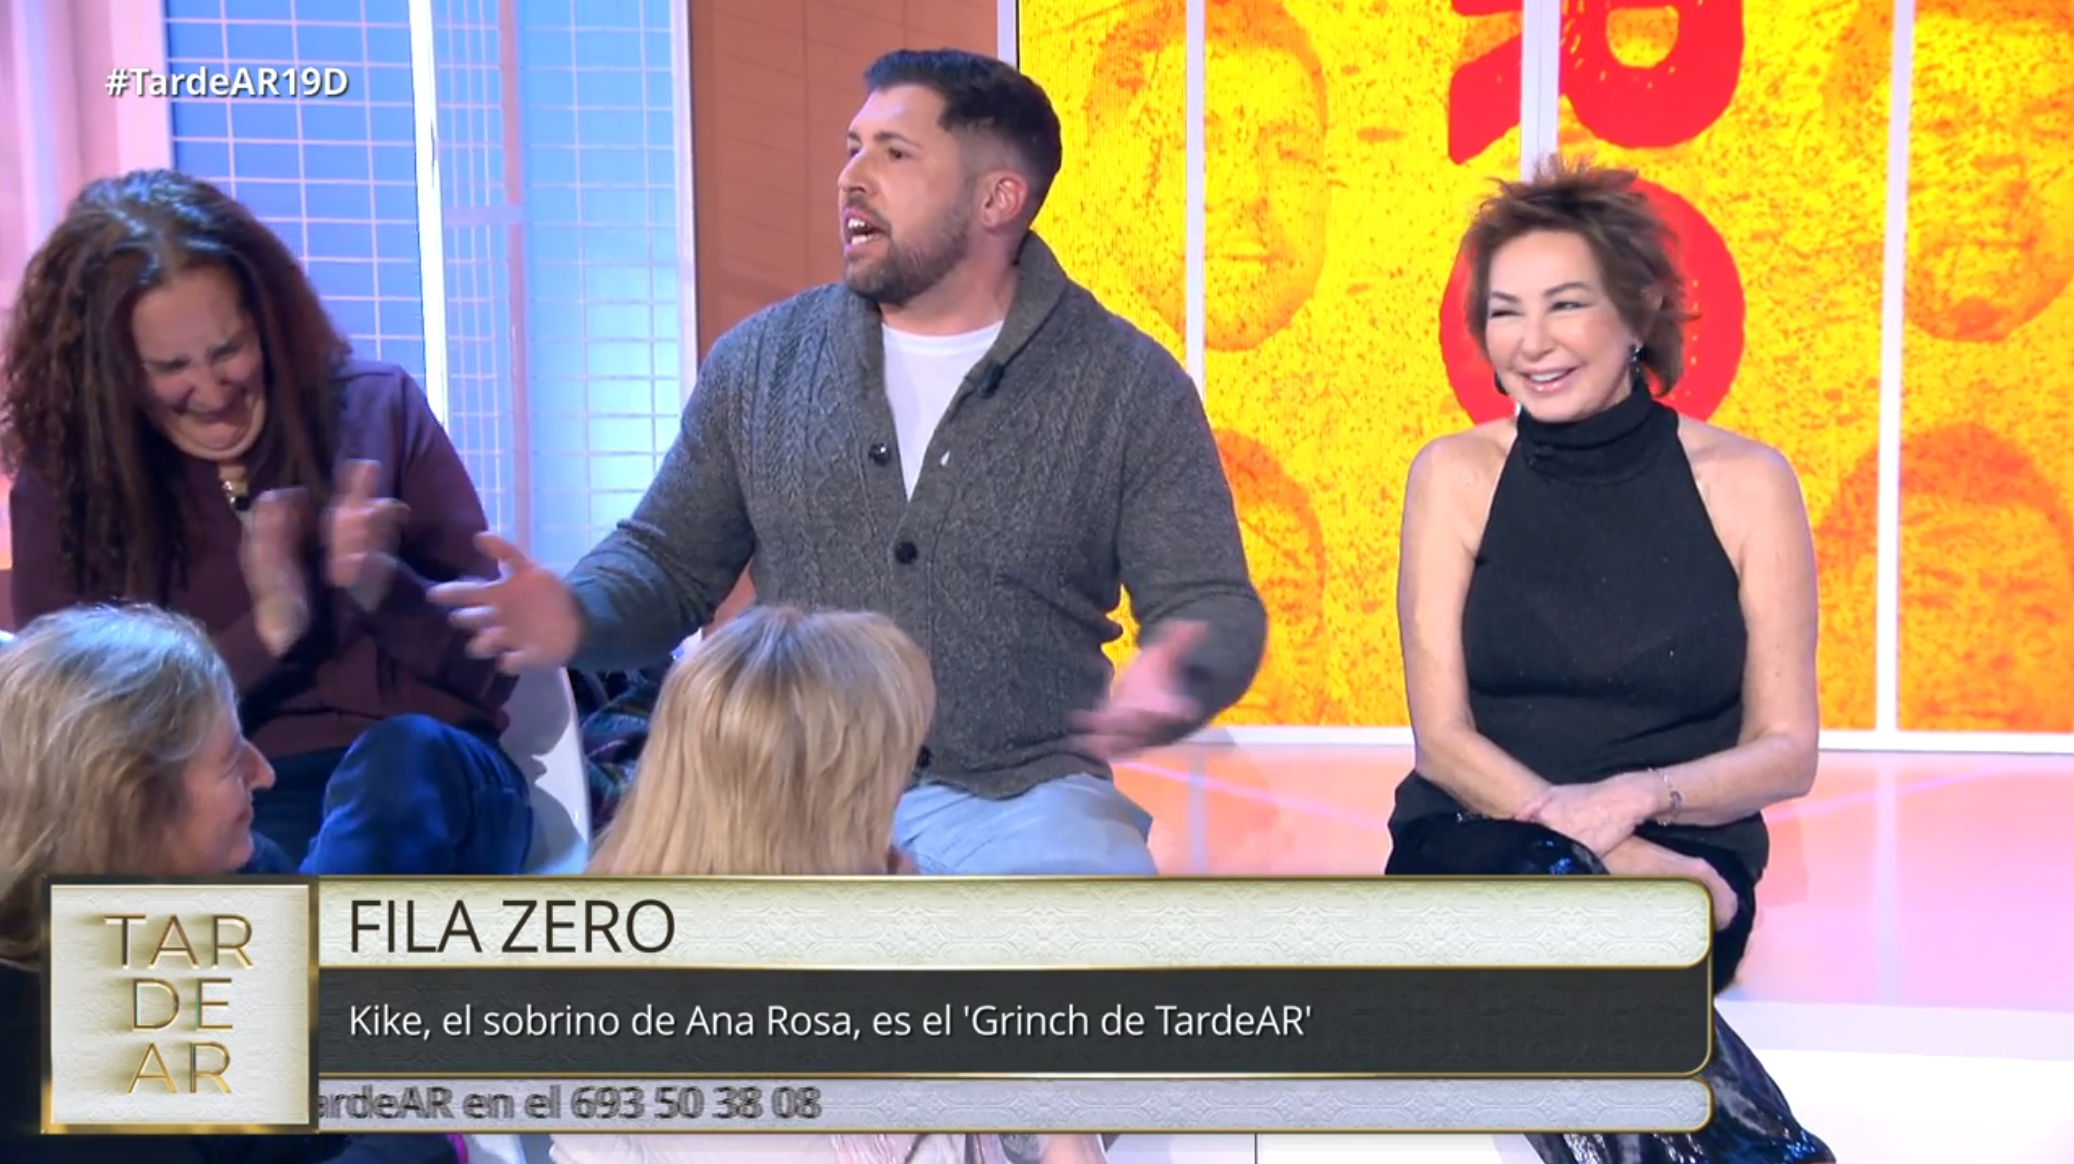 El sobrino de Ana Rosa hace que la presentadora se parta de risa en directo: "Estáis desaforados"